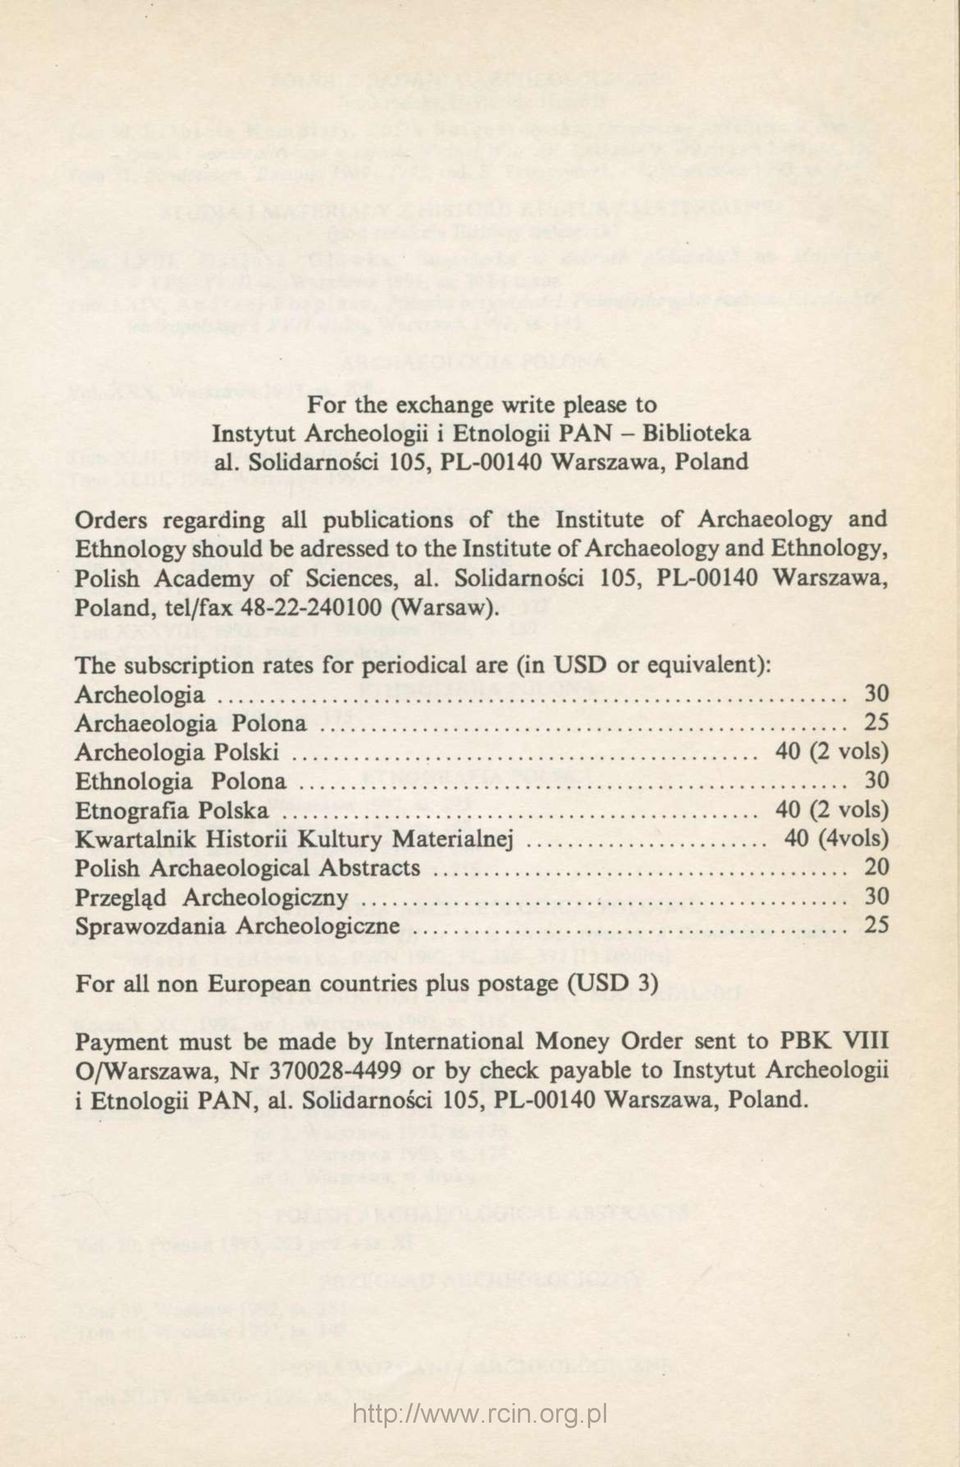 Academy of Sciences, al. Solidarności 105, PL-00140 Warszawa, Poland, tel/fax 48-22-240100 (Warsaw).